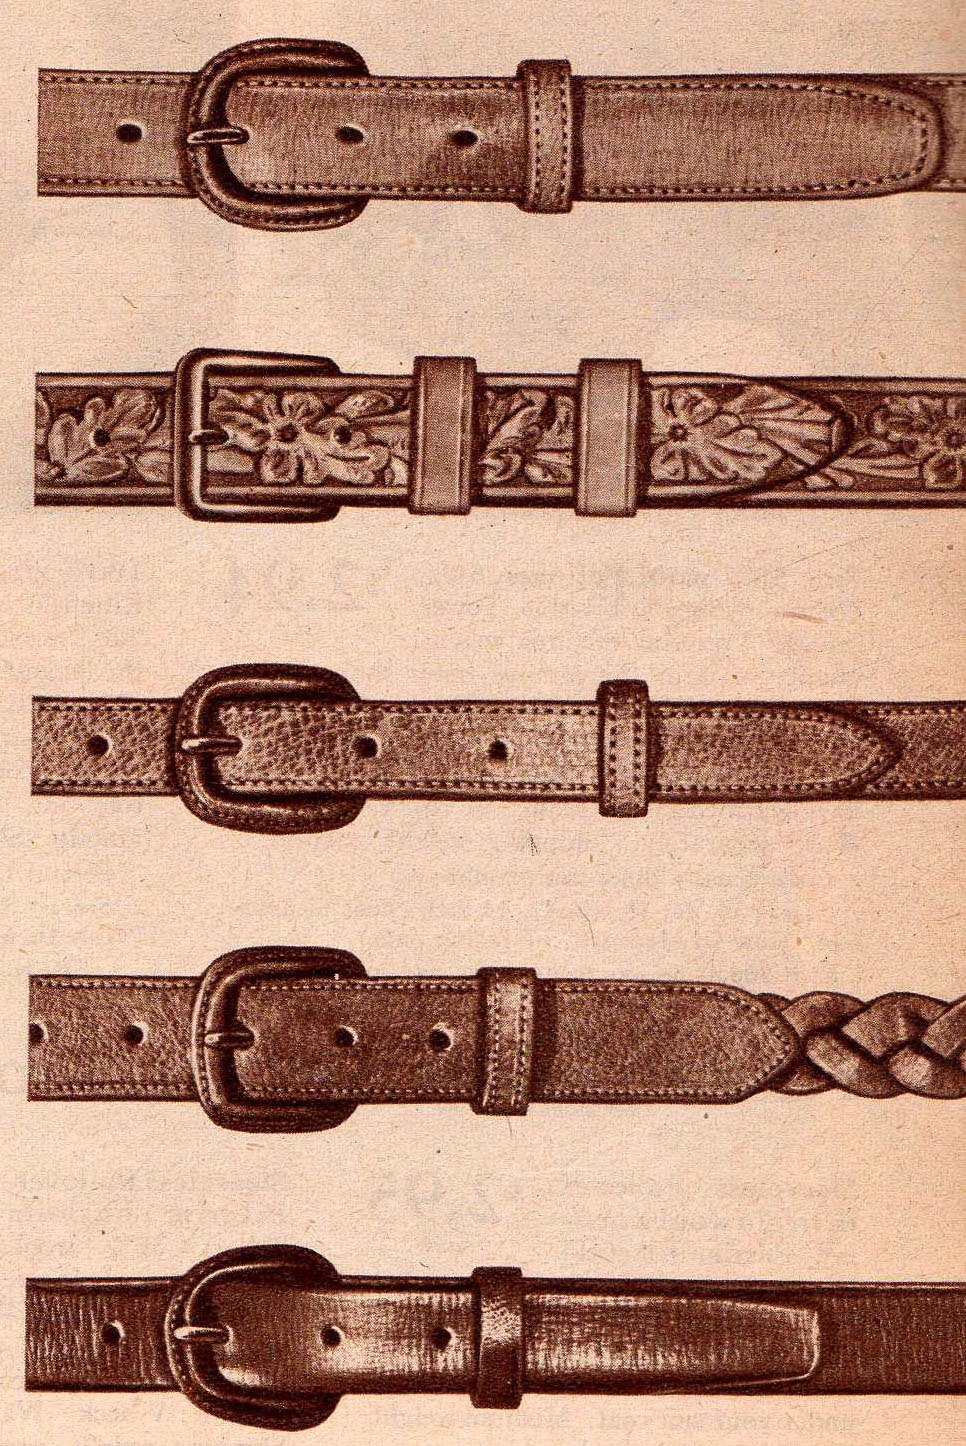 1940s Men’s Accessories: Belt, Suspenders, Cuff Links, Jewelry